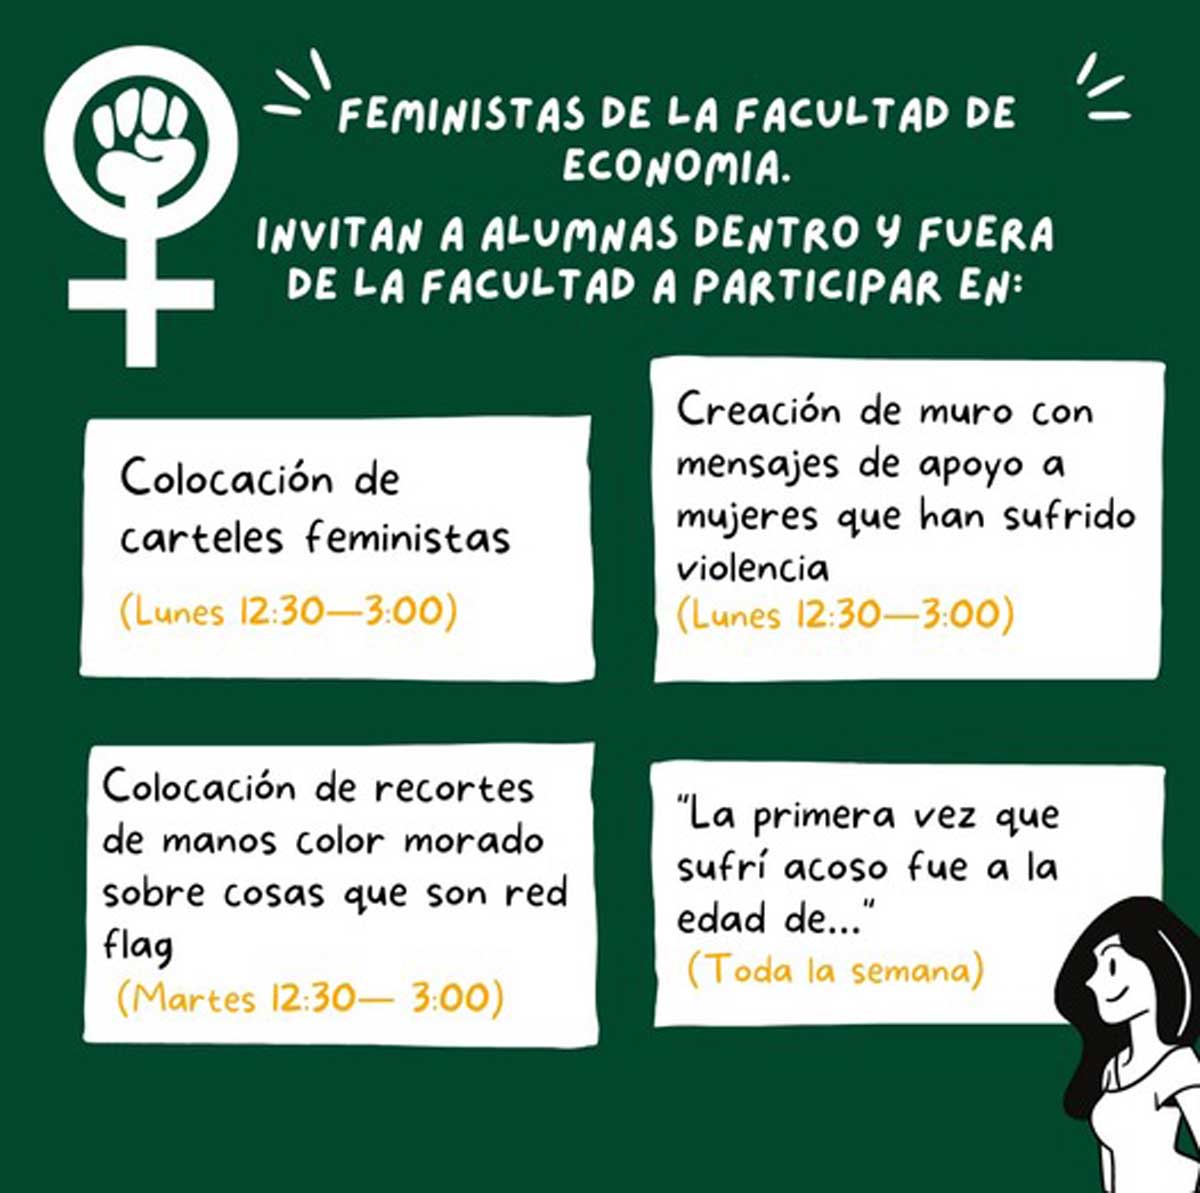 Marchas feministas en la facultad de economía de la Uaem